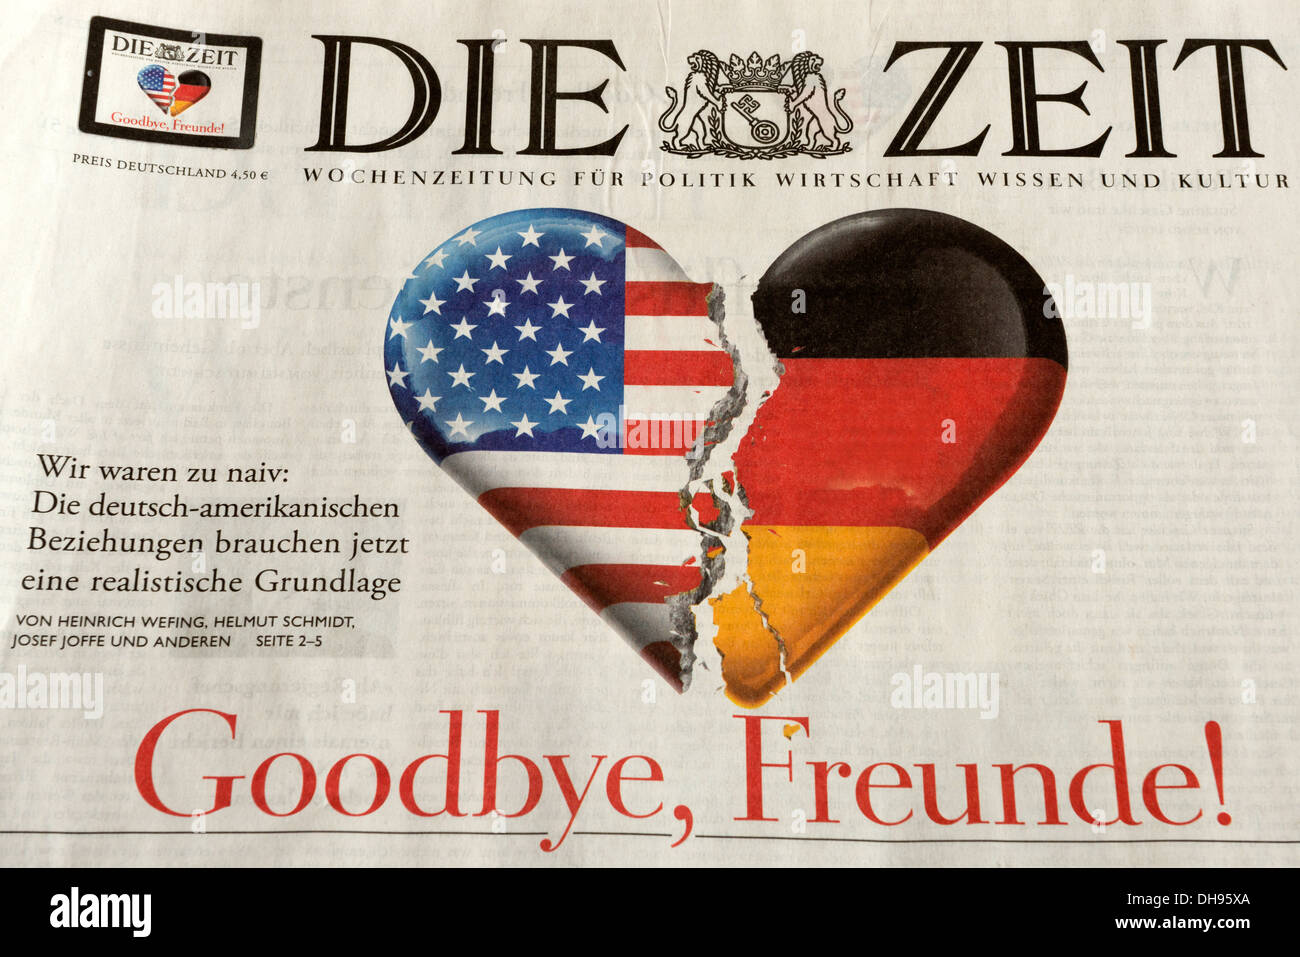 German newspaper Die Zeit 31.10.2013 Stock Photo